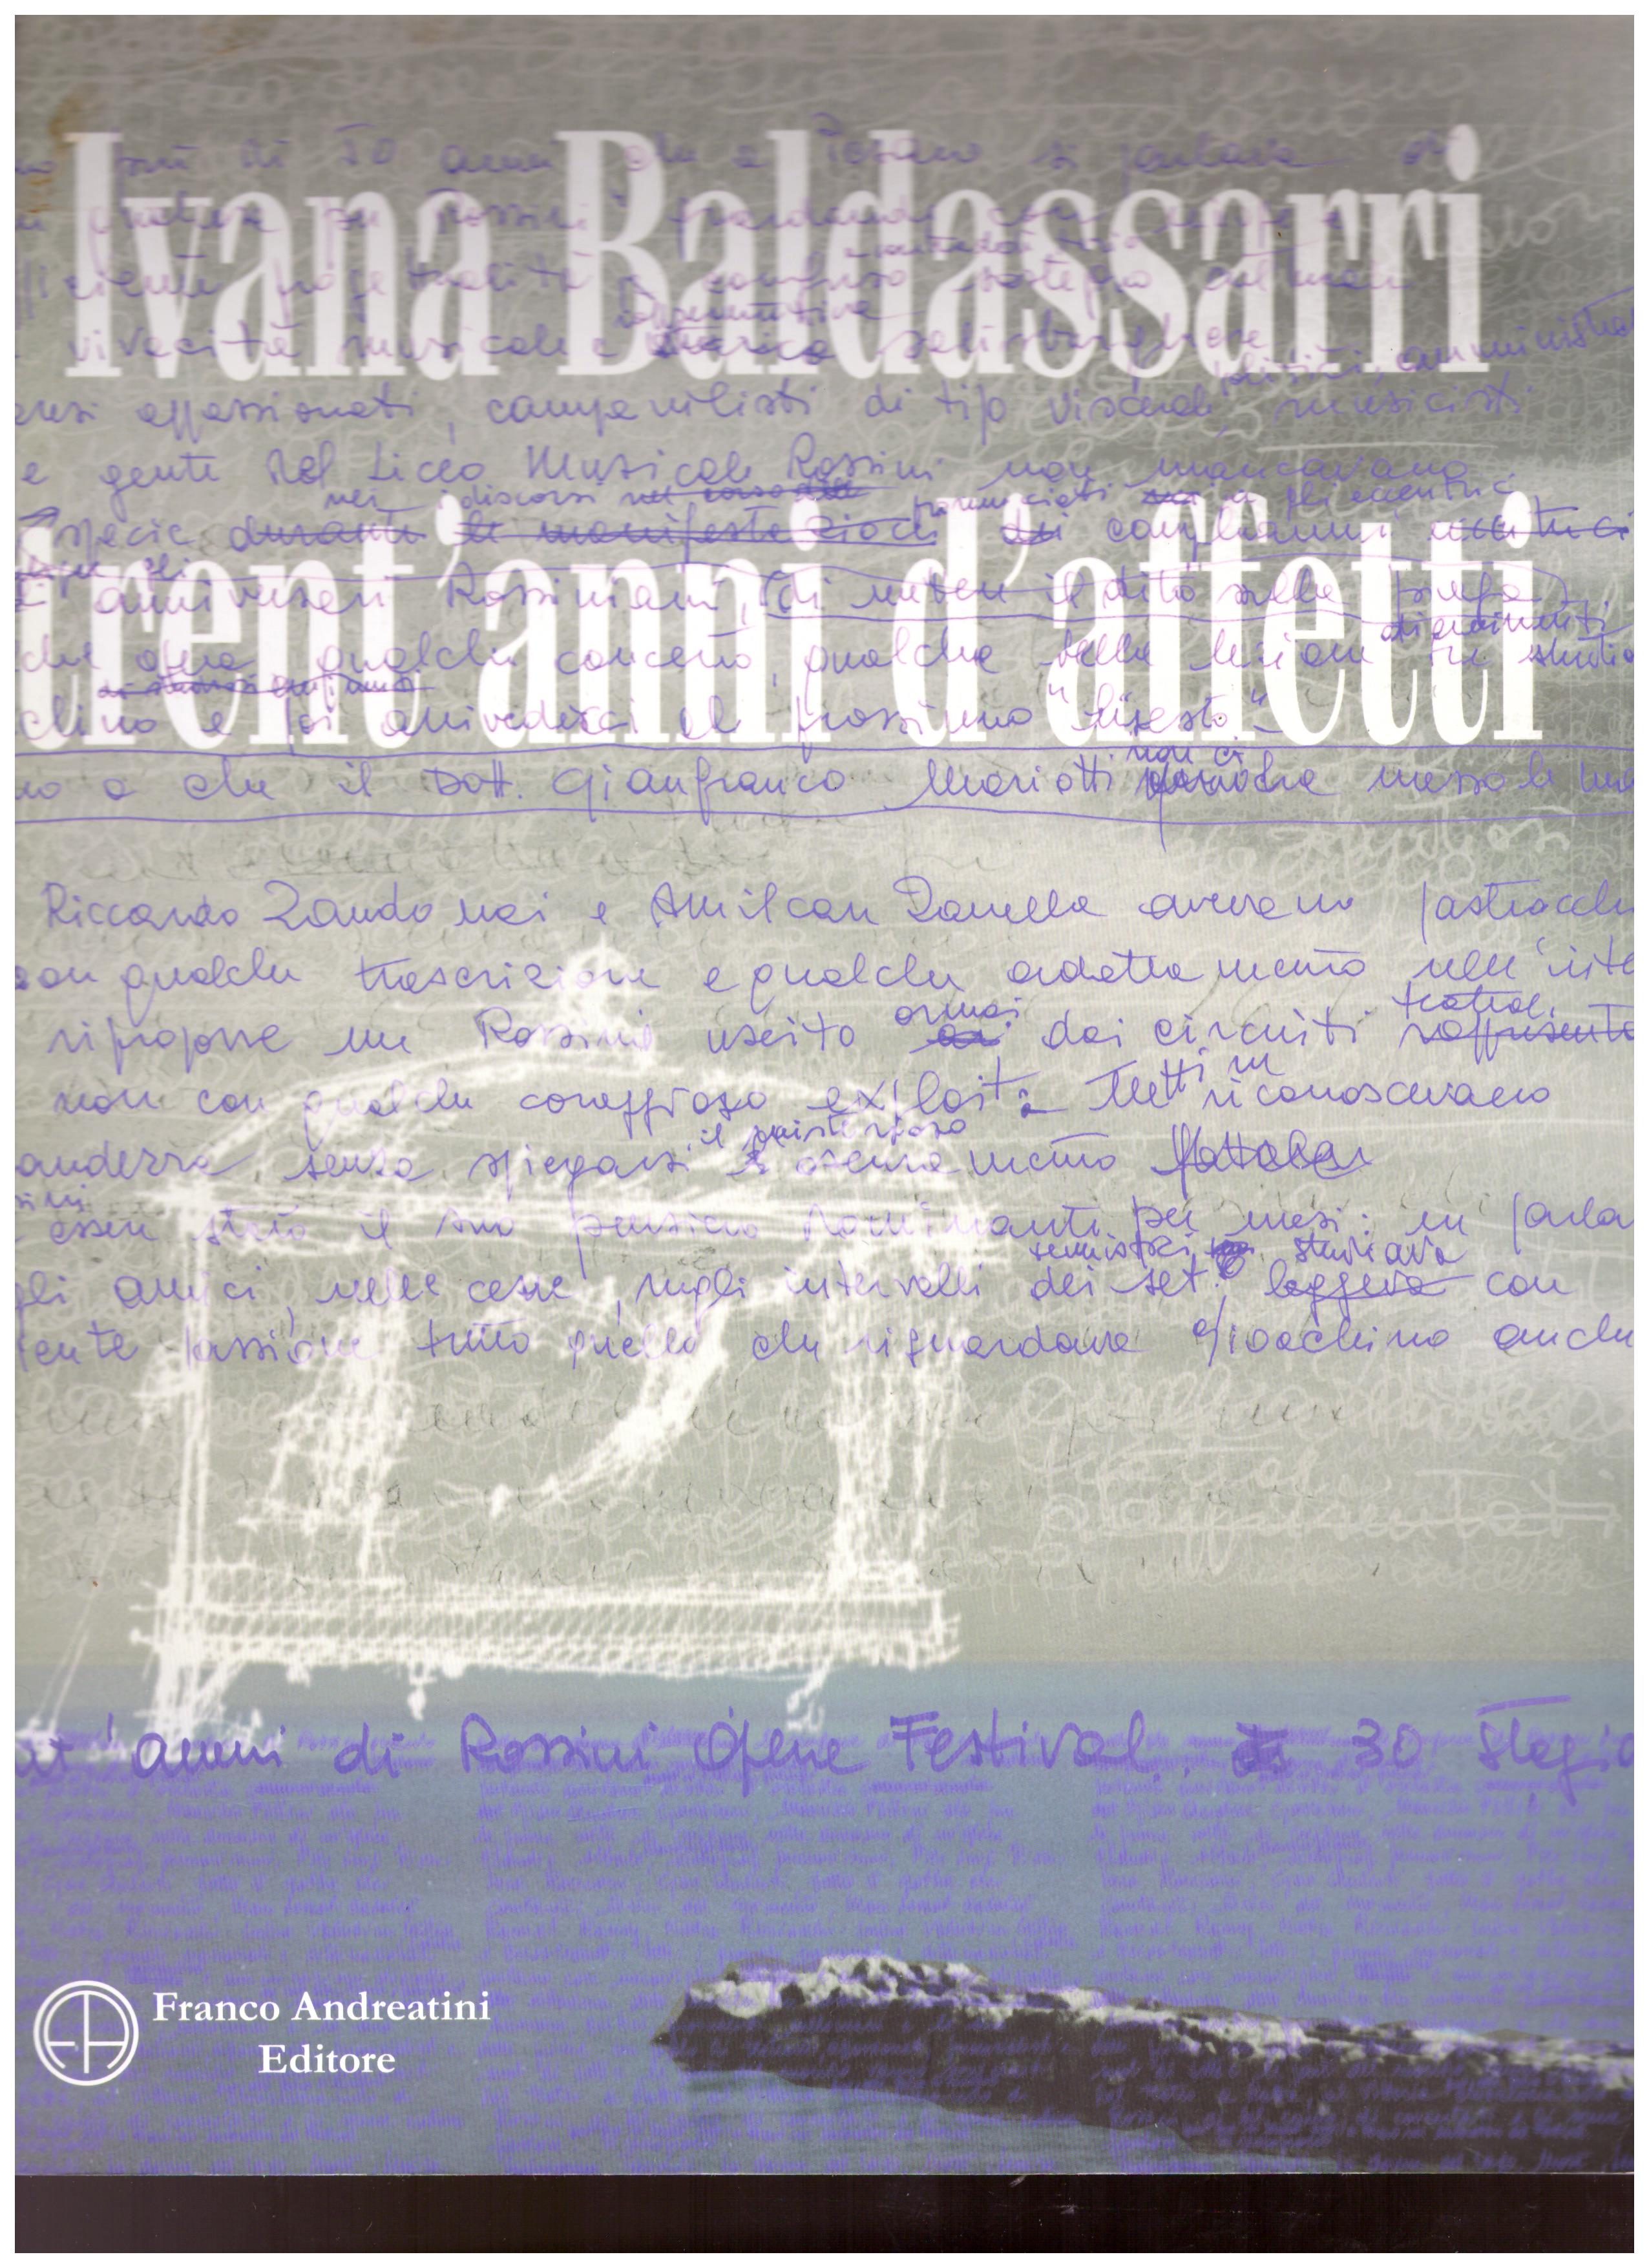 Titolo: Trent'anni d'affetti     Autore: Ivana Bldassarri    Editore: Franco Andreatini